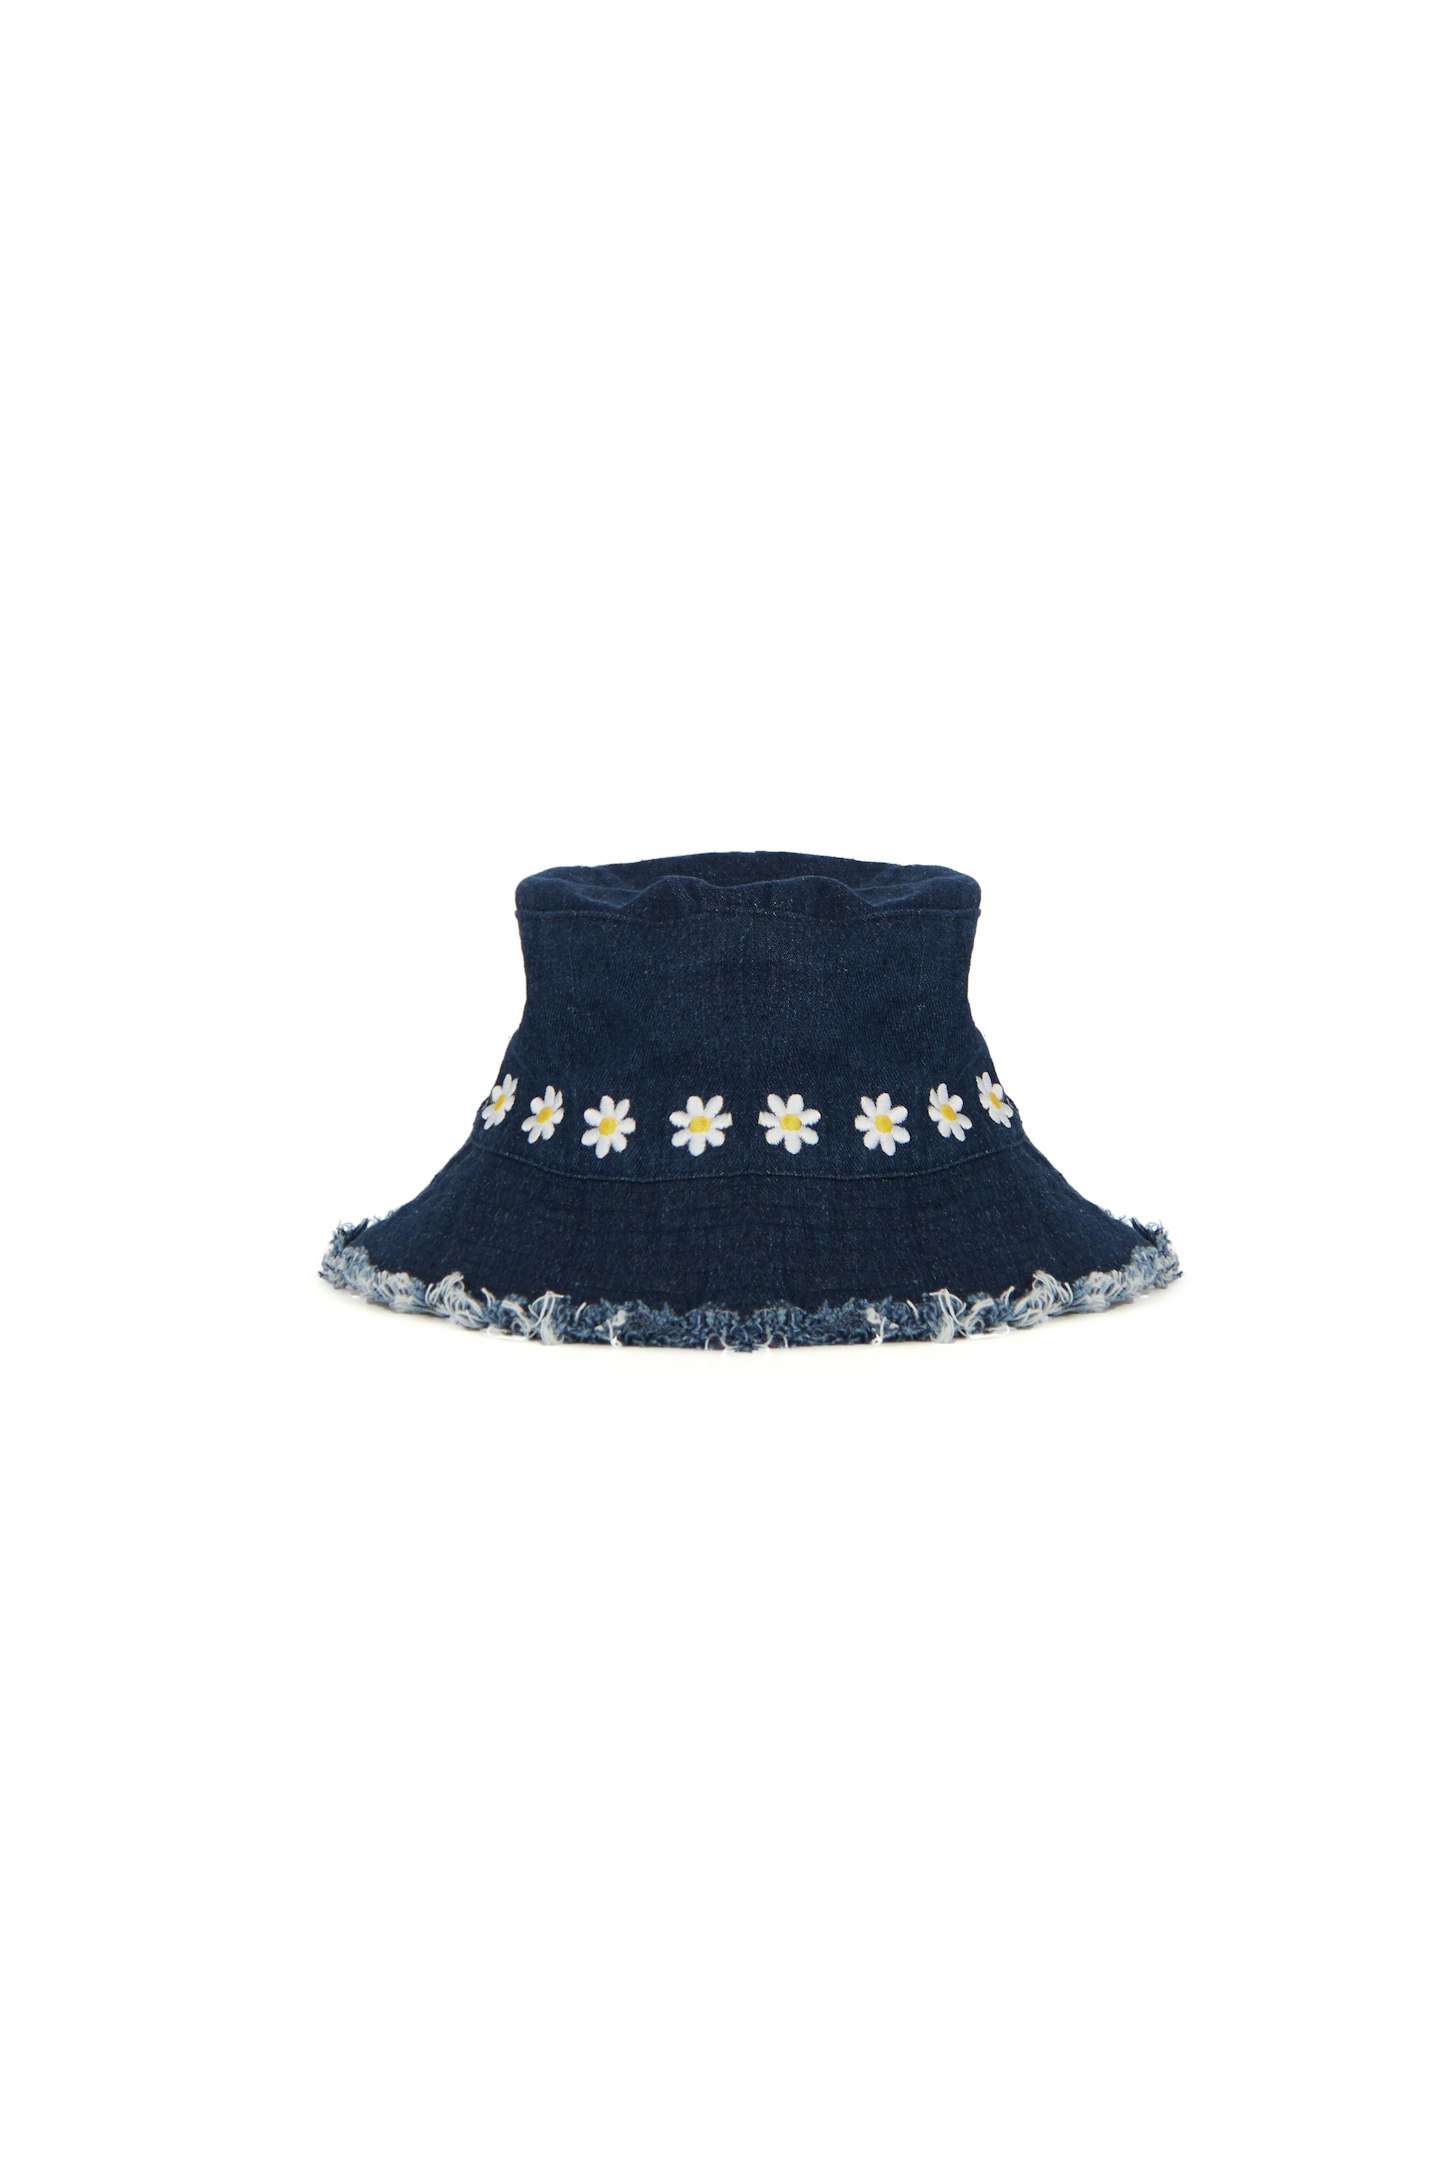 Daisy Bucket Hat, £22